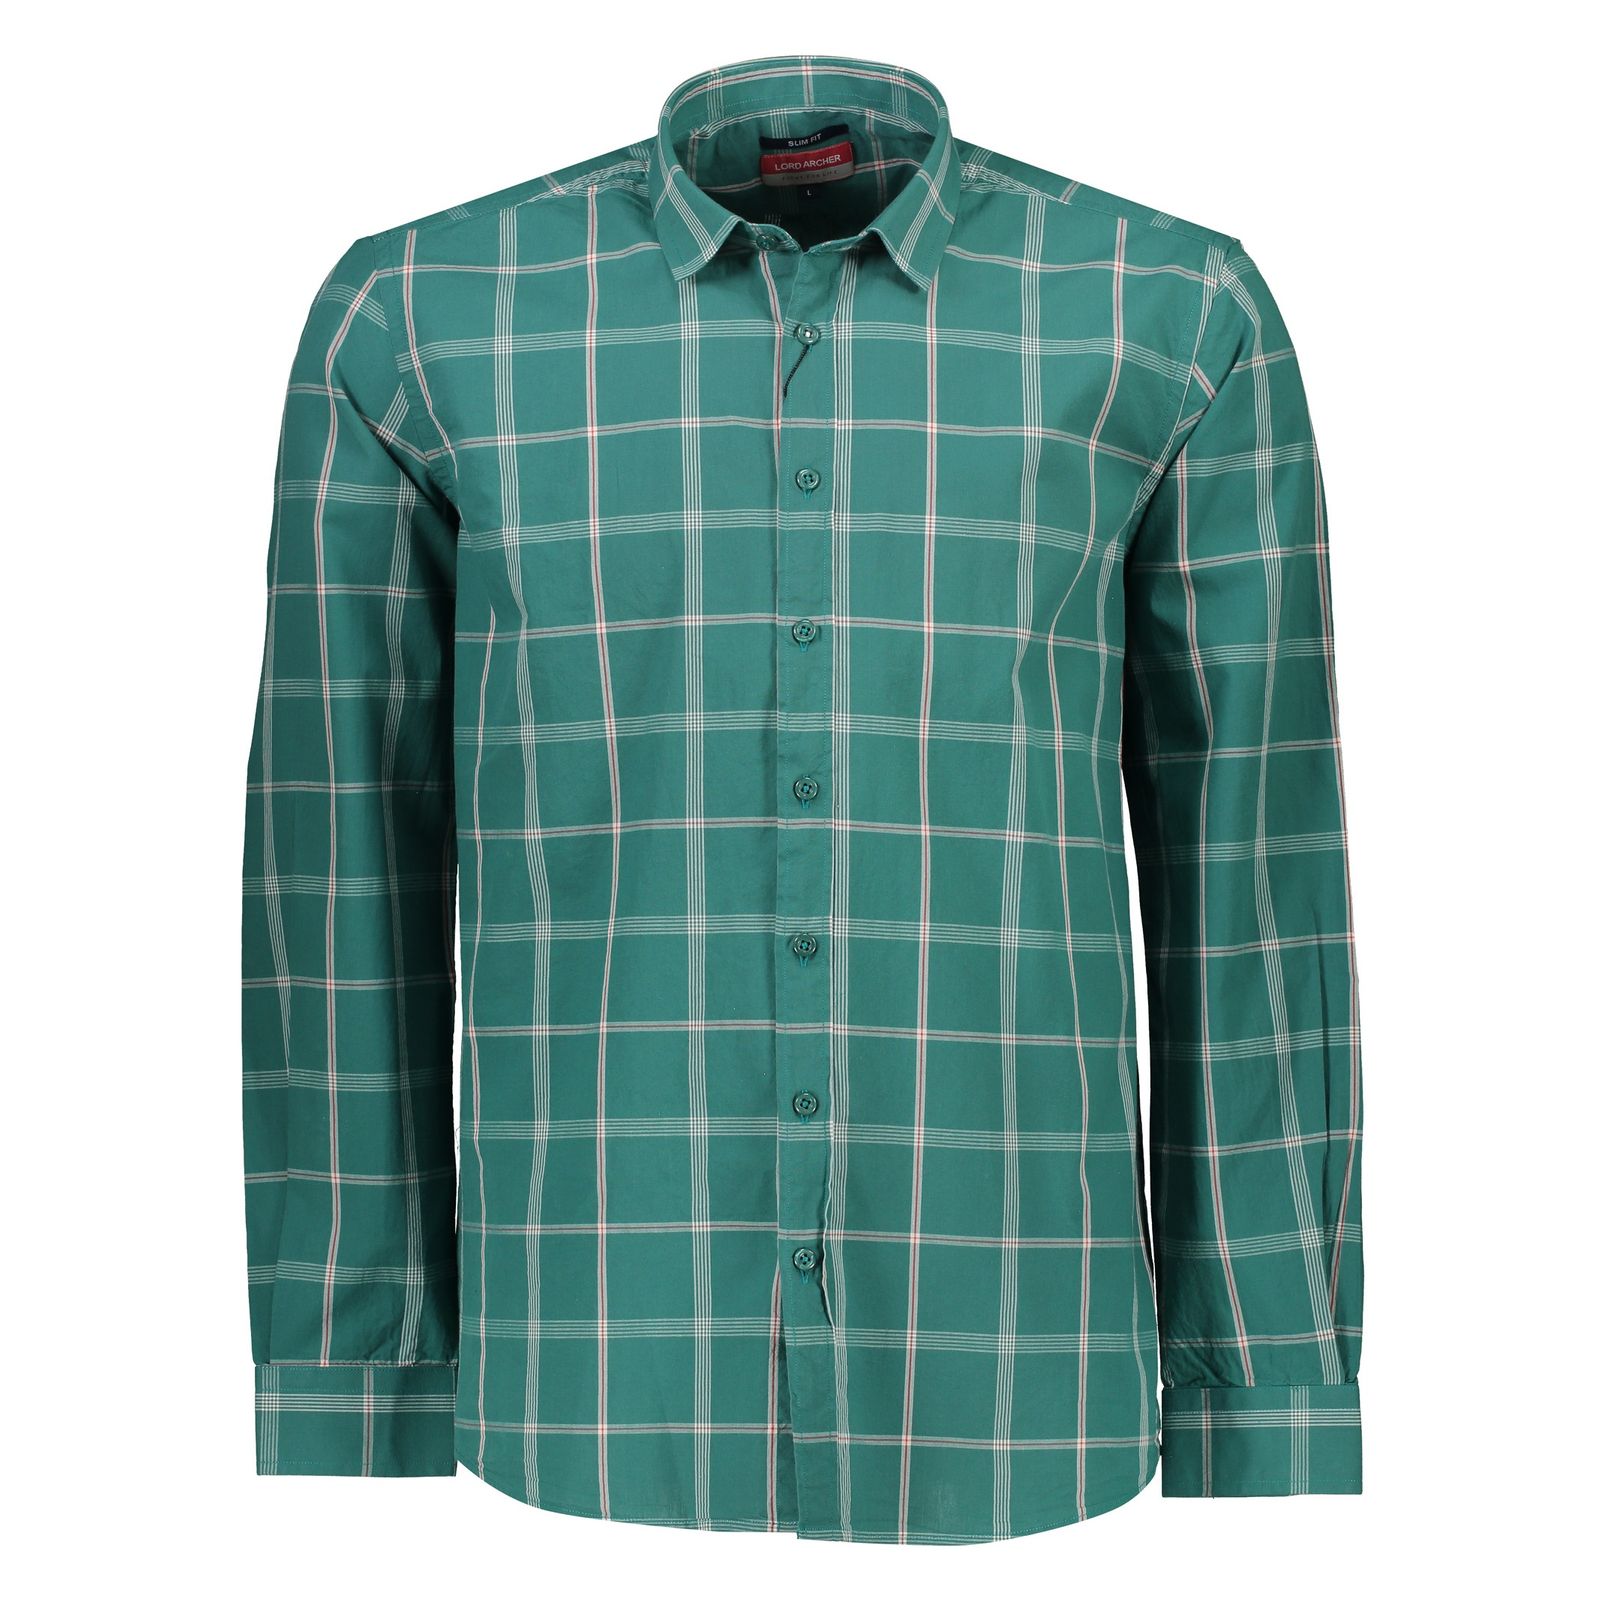 پیراهن مردانه لرد آرچر مدل 20011434501 - سبز سفید - 2